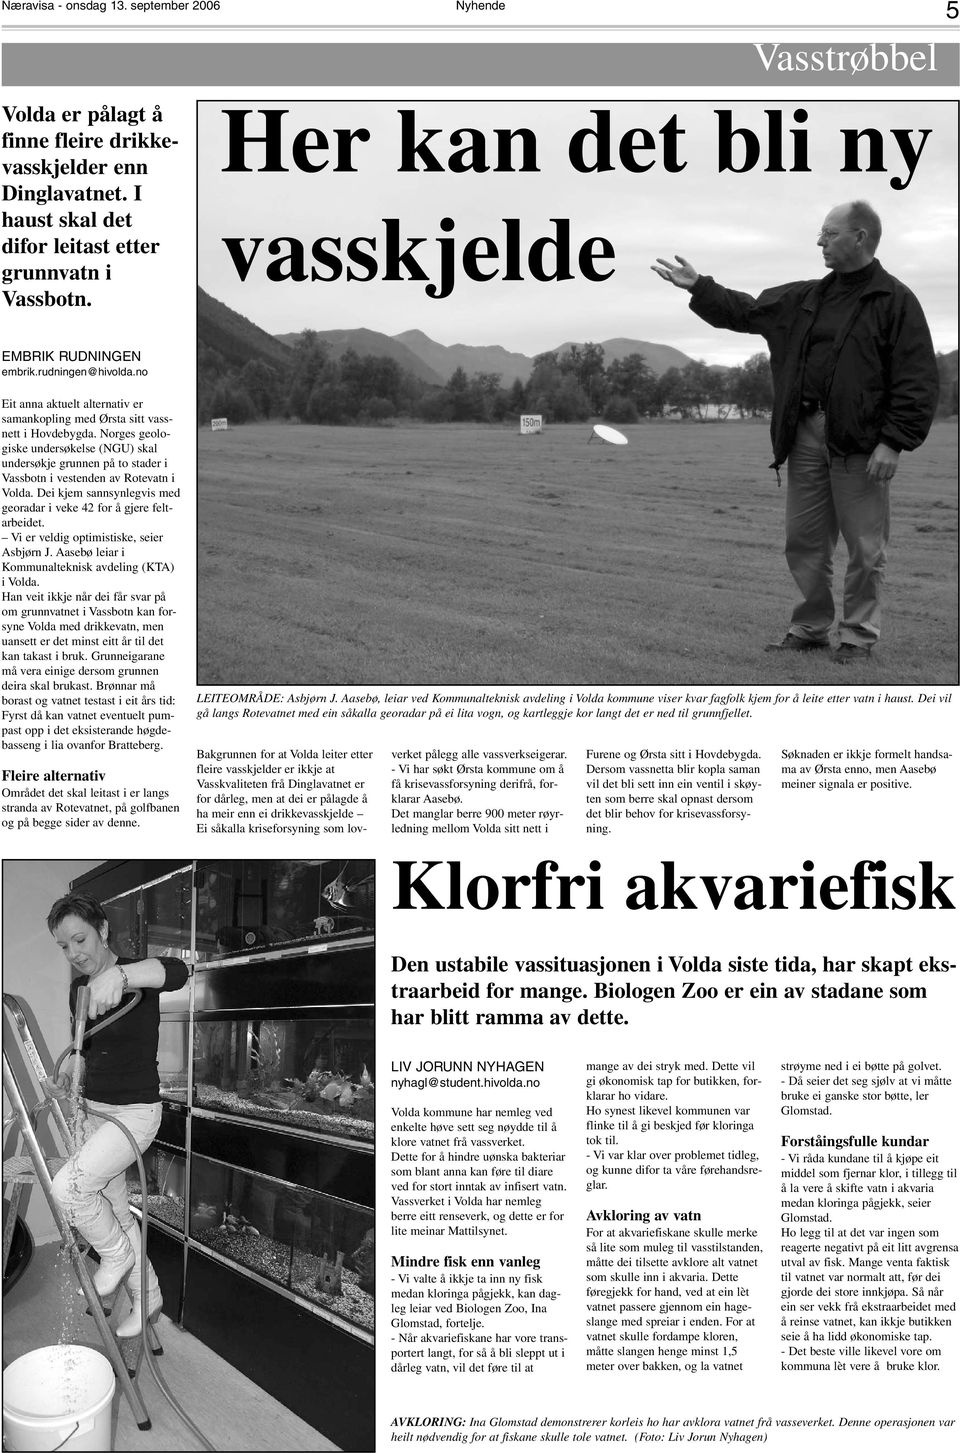 Norges geologiske undersøkelse (NGU) skal undersøkje grunnen på to stader i Vassbotn i vestenden av Rotevatn i Volda. Dei kjem sannsynlegvis med georadar i veke 42 for å gjere feltarbeidet.